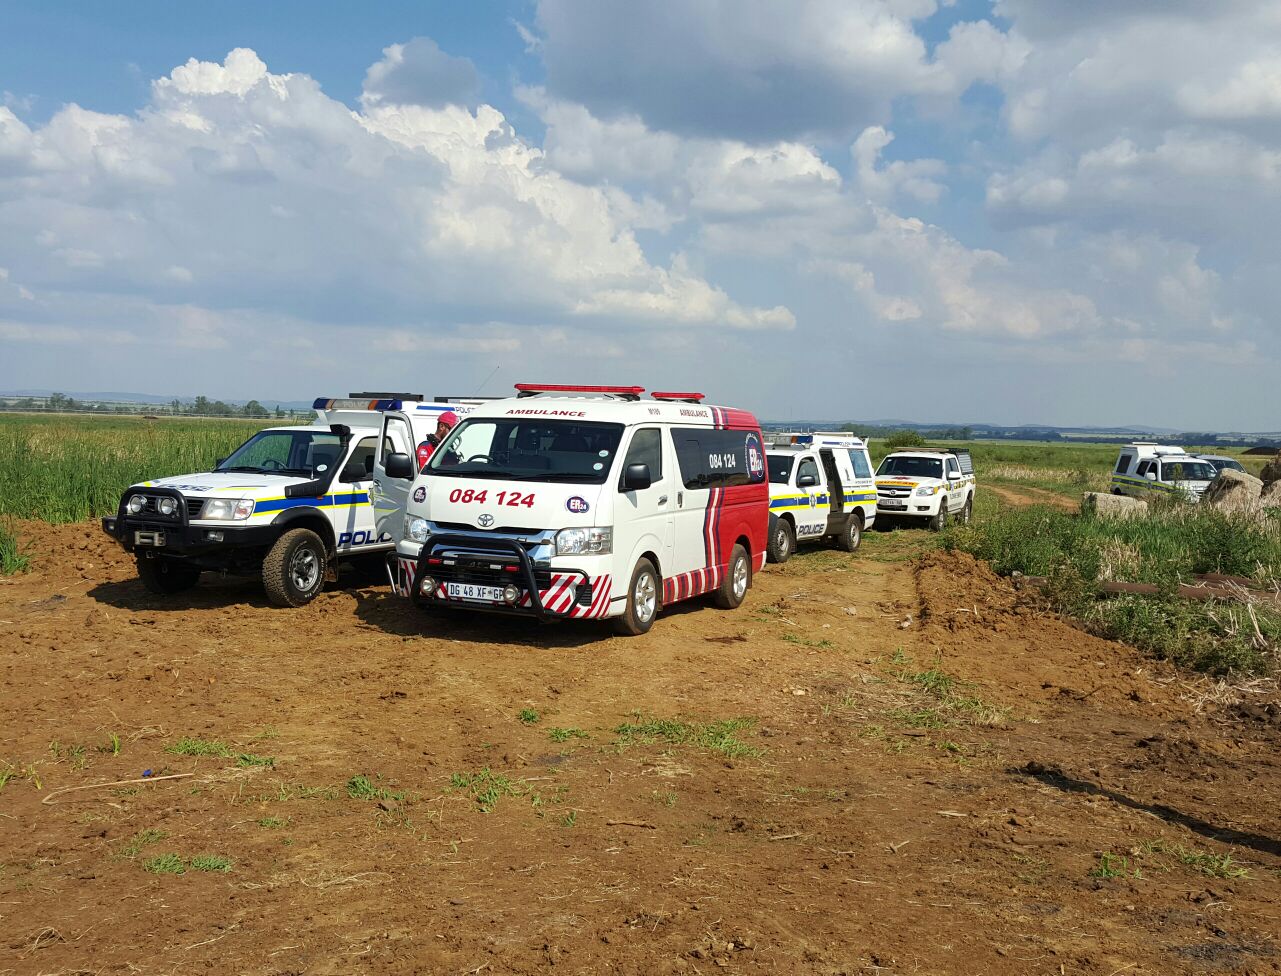 Man drowns in farm dam, Potchefstroom